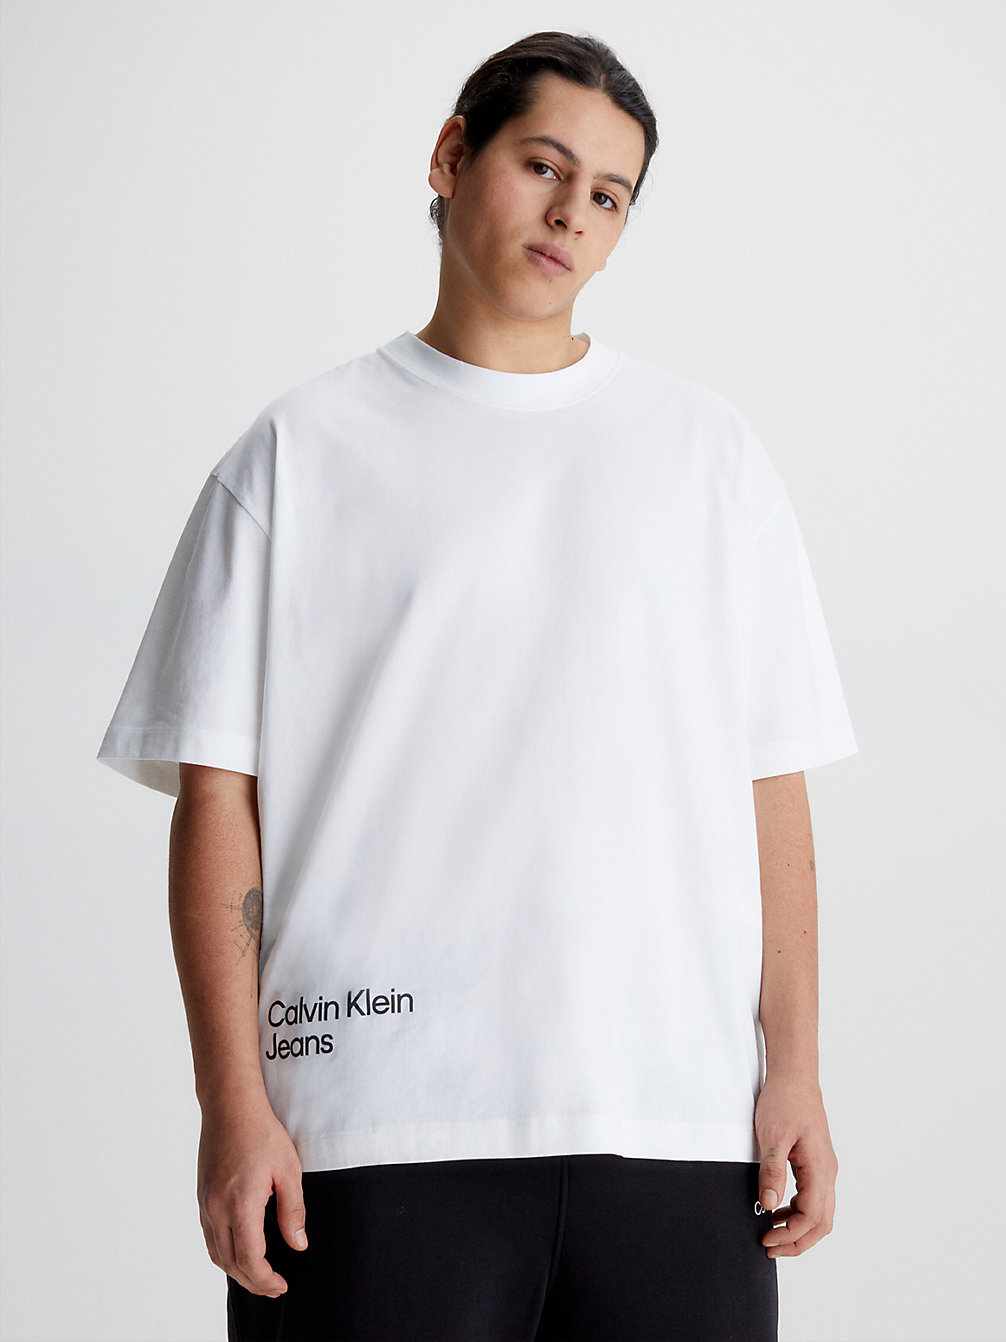 BRIGHT WHITE T-Shirt In Großen Größen Mit Logo Hinten undefined Herren Calvin Klein